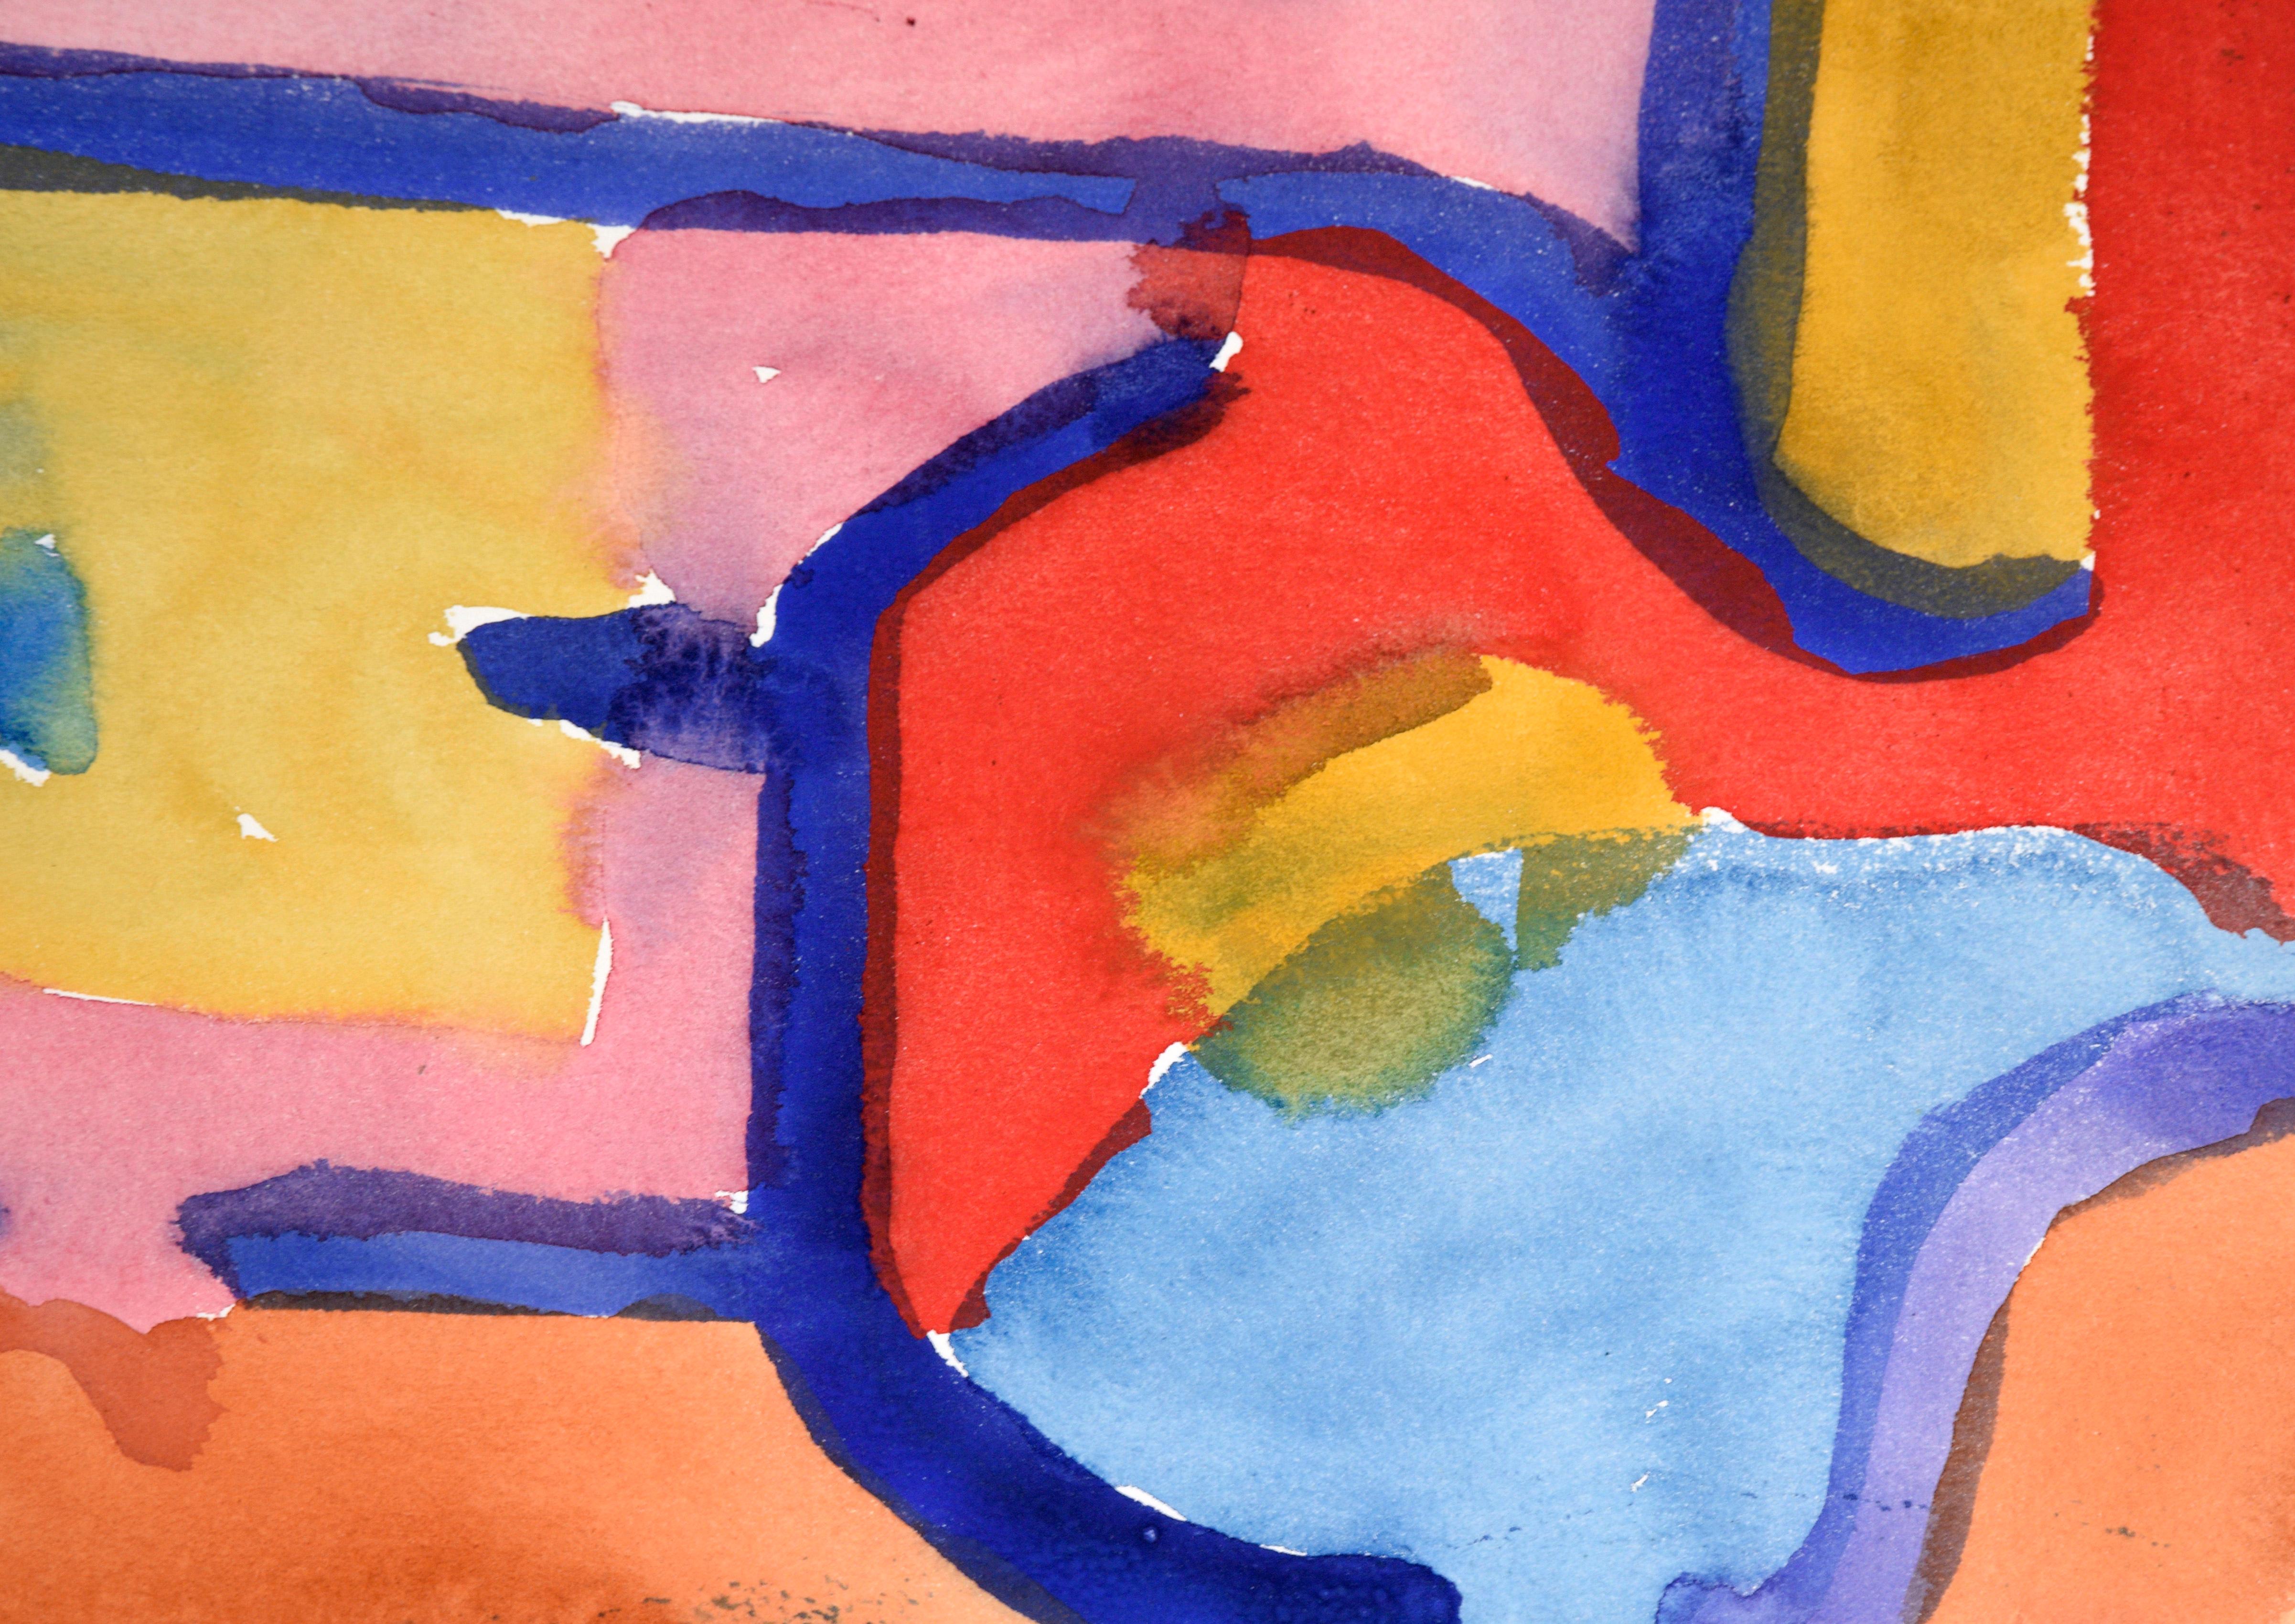 Blau, Rosa & Rot Abstrakt in Aquarell auf Papier

Ein kühnes abstraktes expressionistisches Aquarell von Les (Leslie Luverne) Anderson (Amerikaner, 1928-2009). Helle Abschnitte in Gelb, Rosa, Orange und Rot sind durch dunkelblaue Linien getrennt.